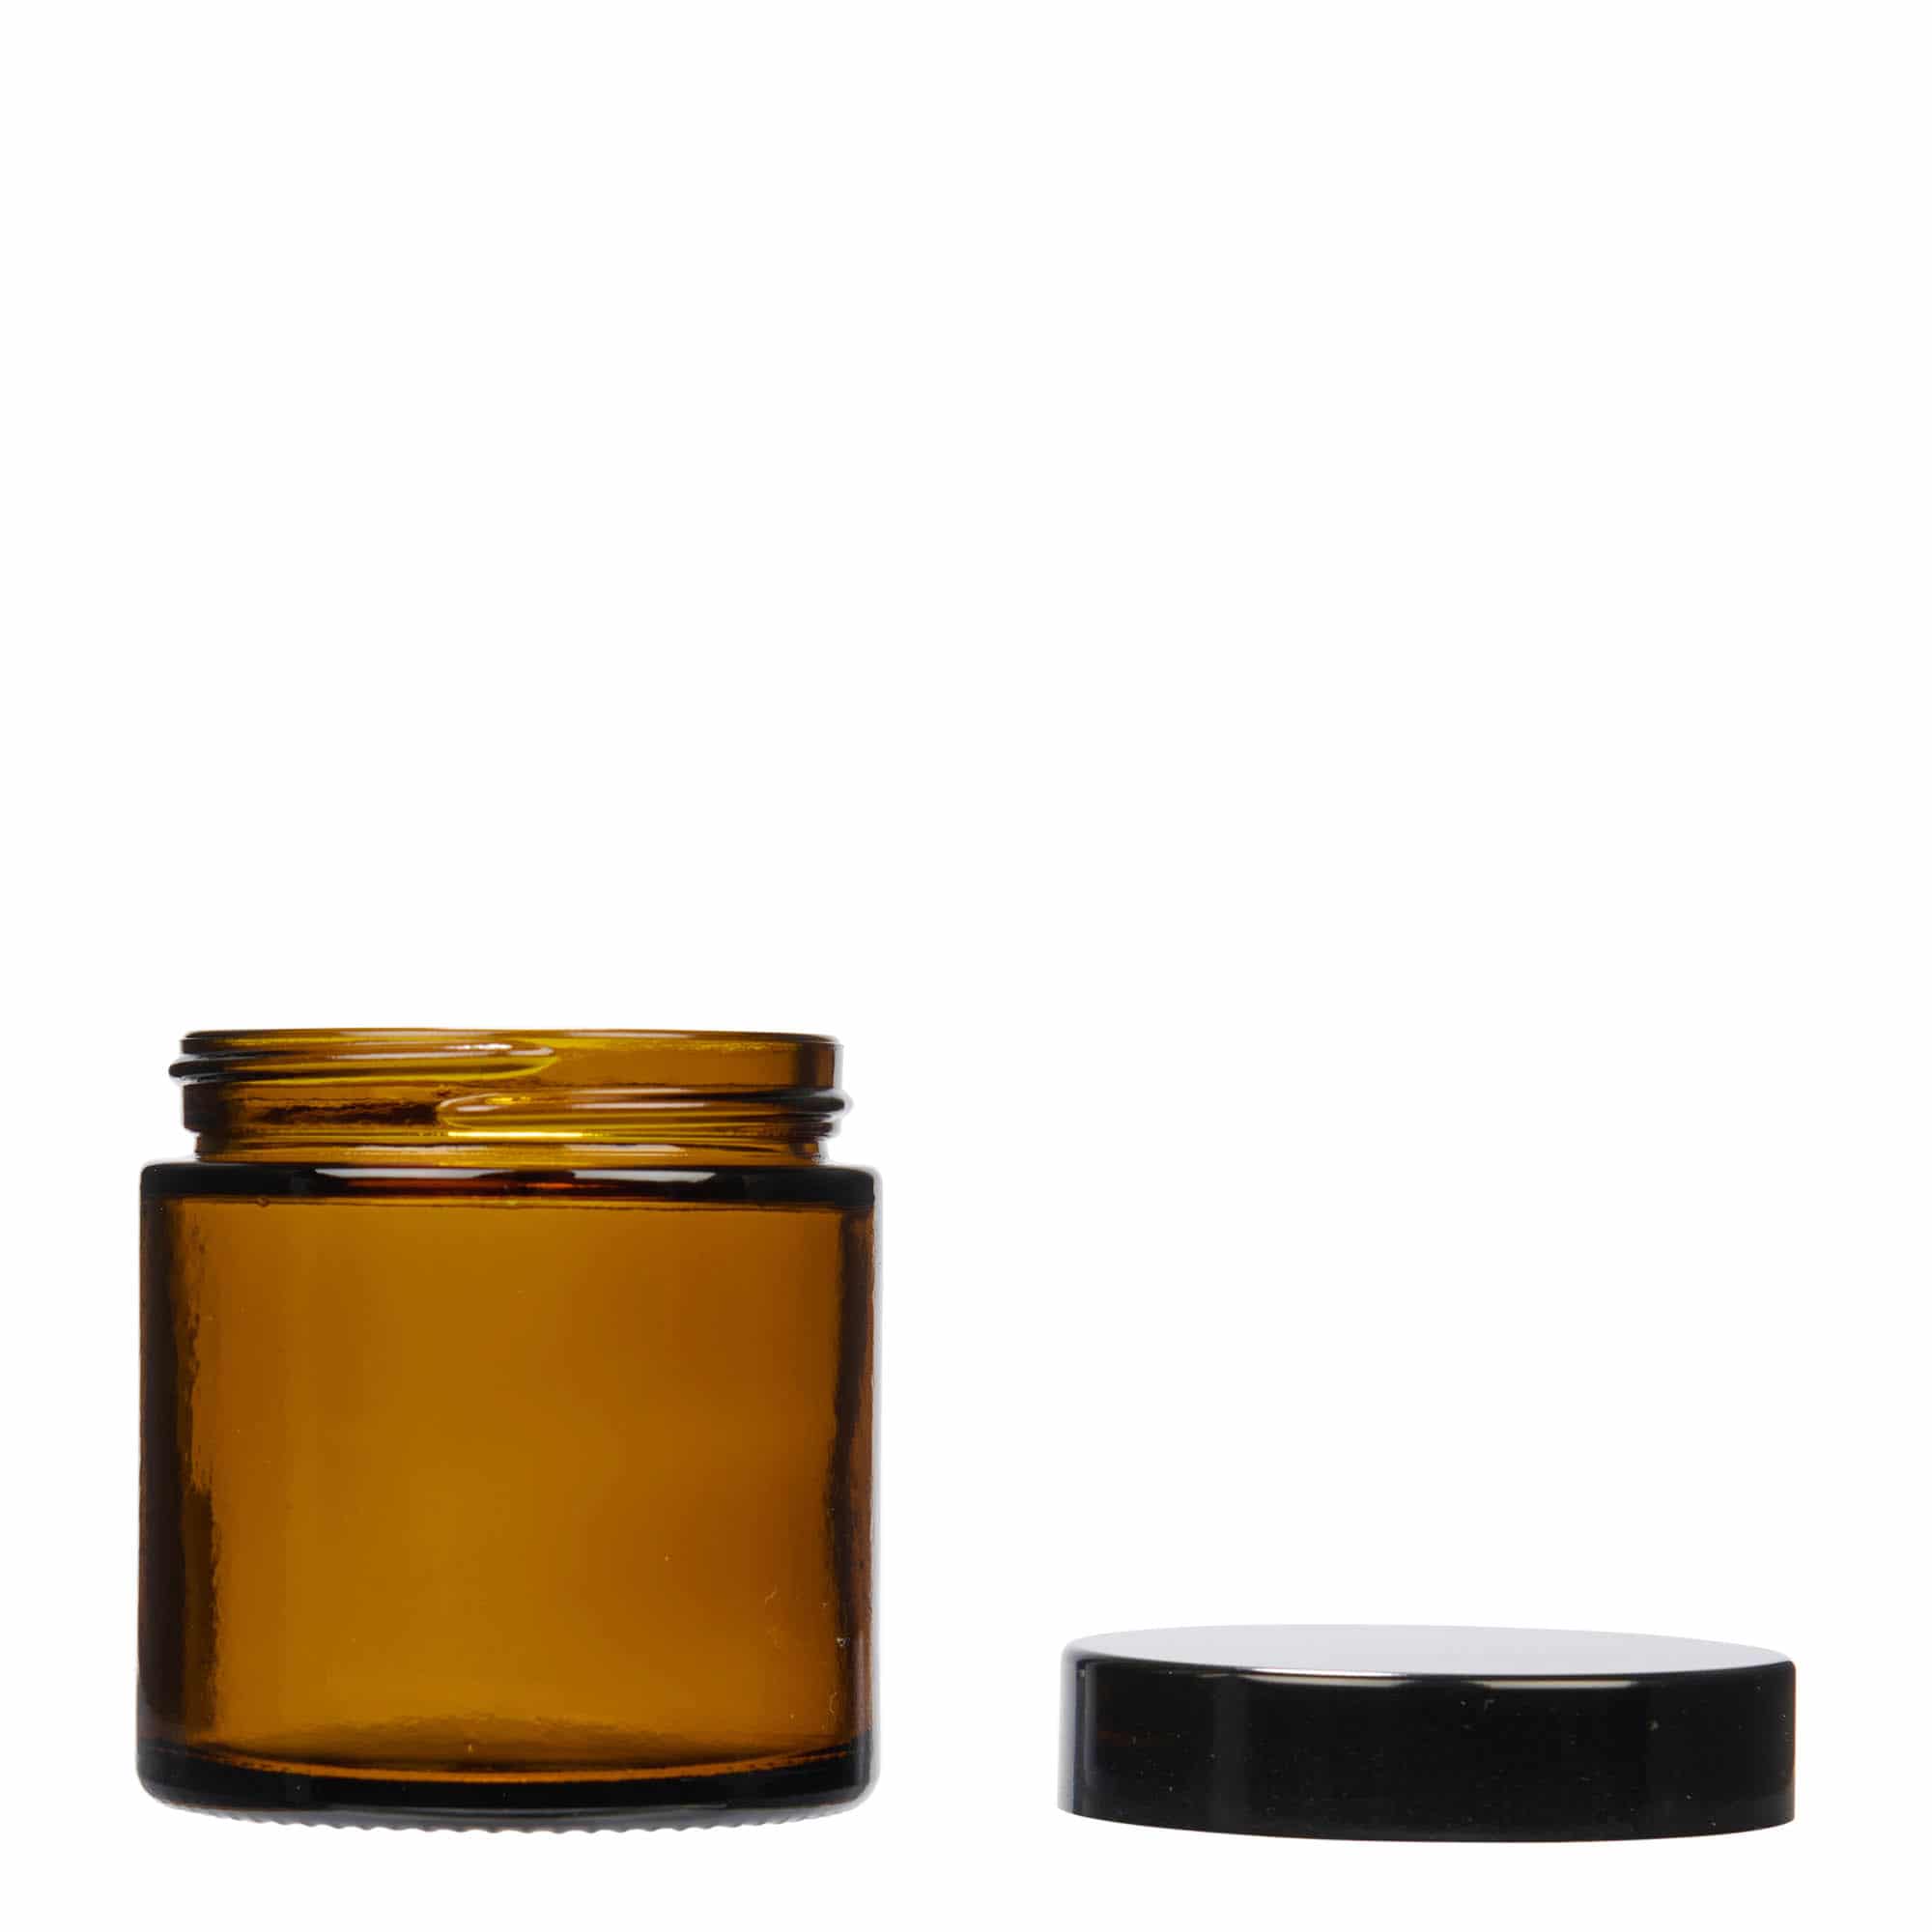 120 ml cosmetic jar 'Brown Line', glass, brown, closure: screw cap